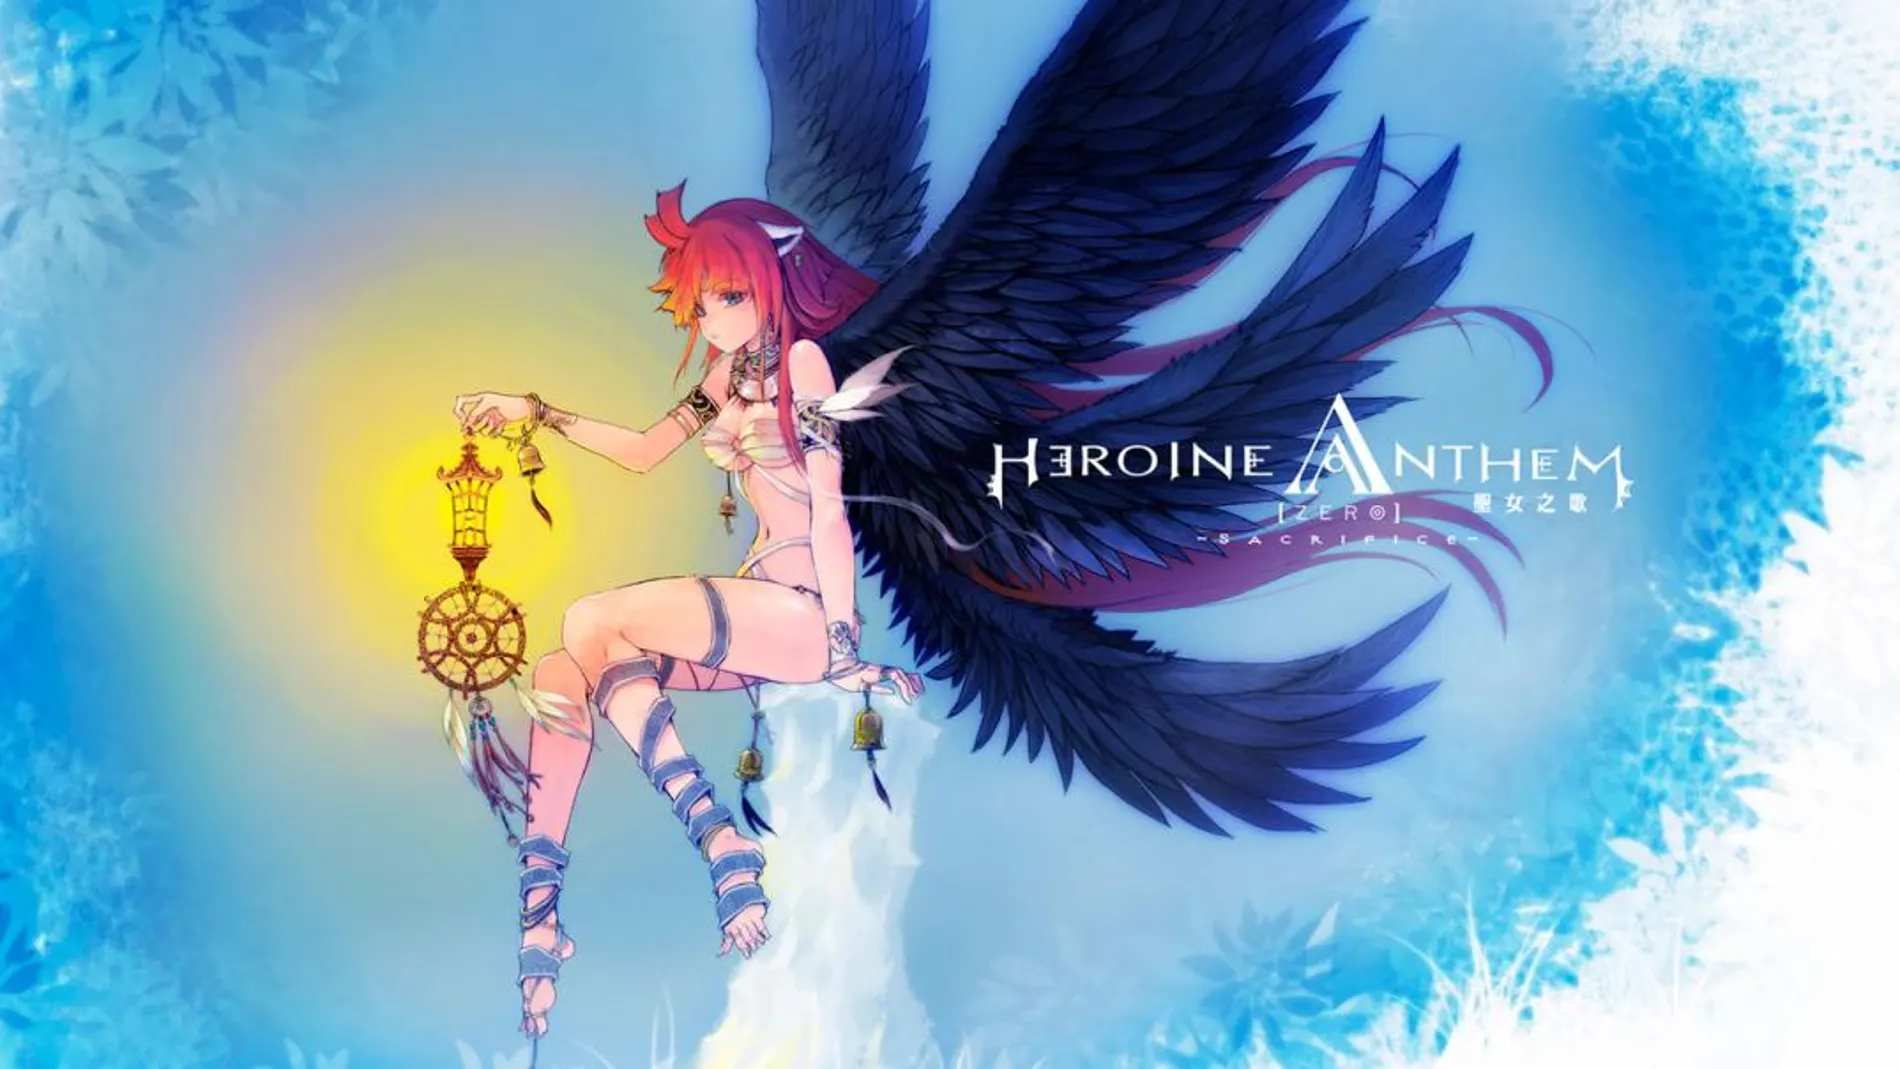 PlayStation 4 estrena el episodio 1 de Heroine Anthem Zero